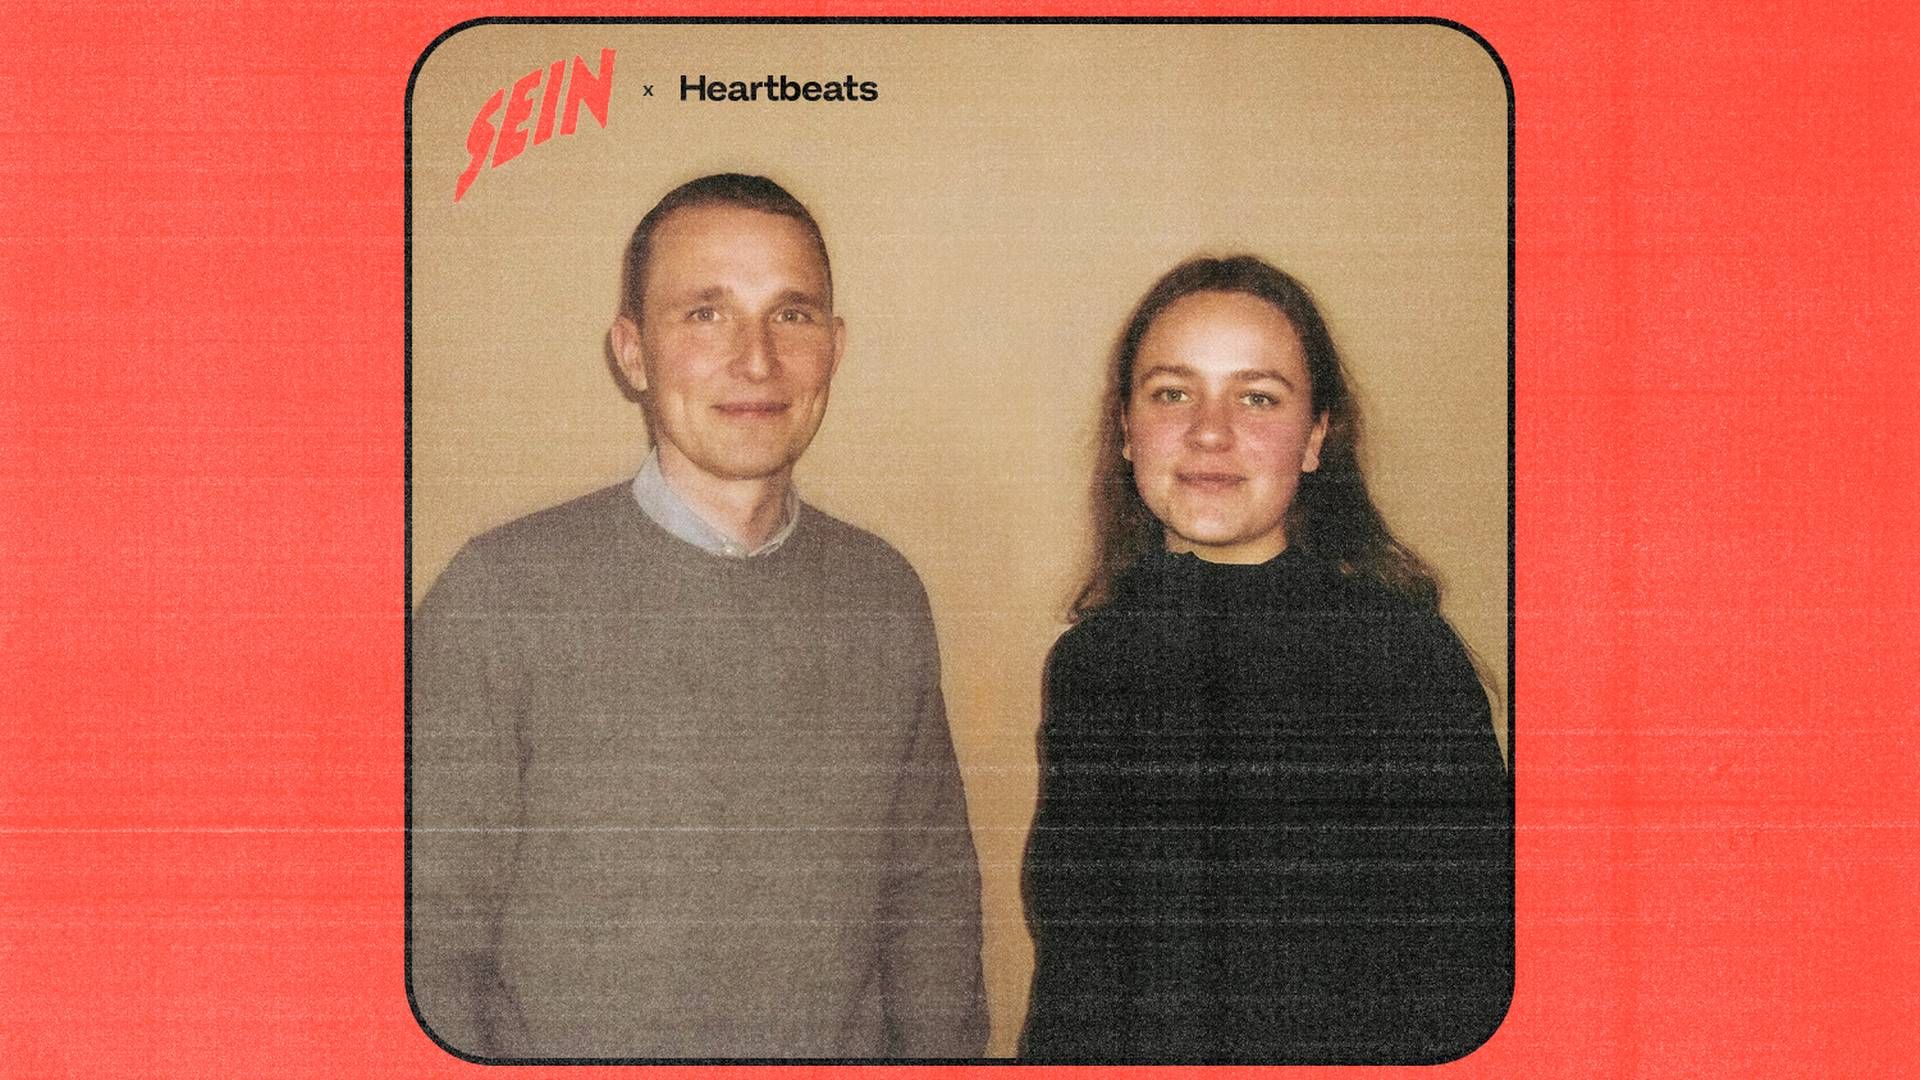 Chefredaktør på Heartbeats Emil Norsker (tv.) og Fria Grand, chefredaktør på Sein. | Foto: Kristina Pedersen / Aller Pr